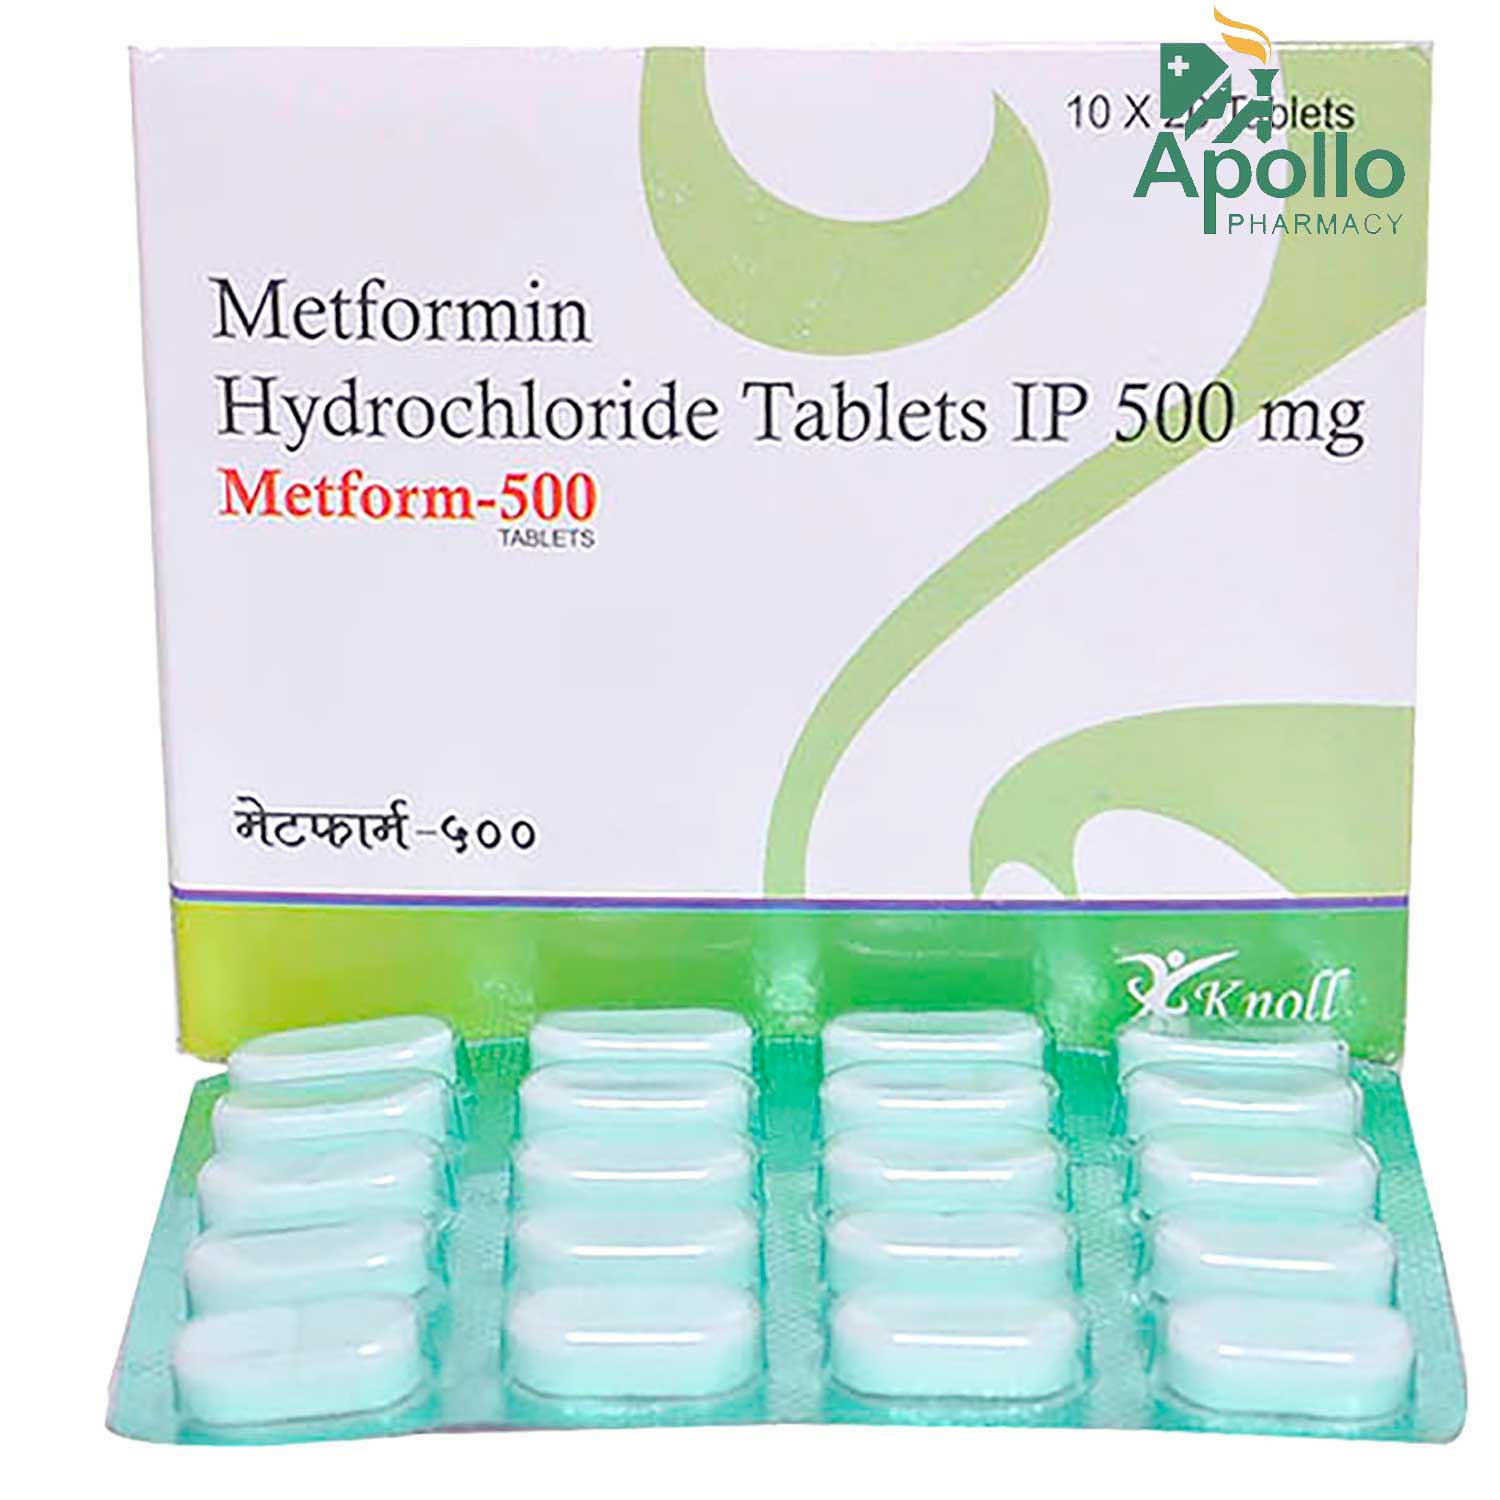 metformin hcl er 500 mg